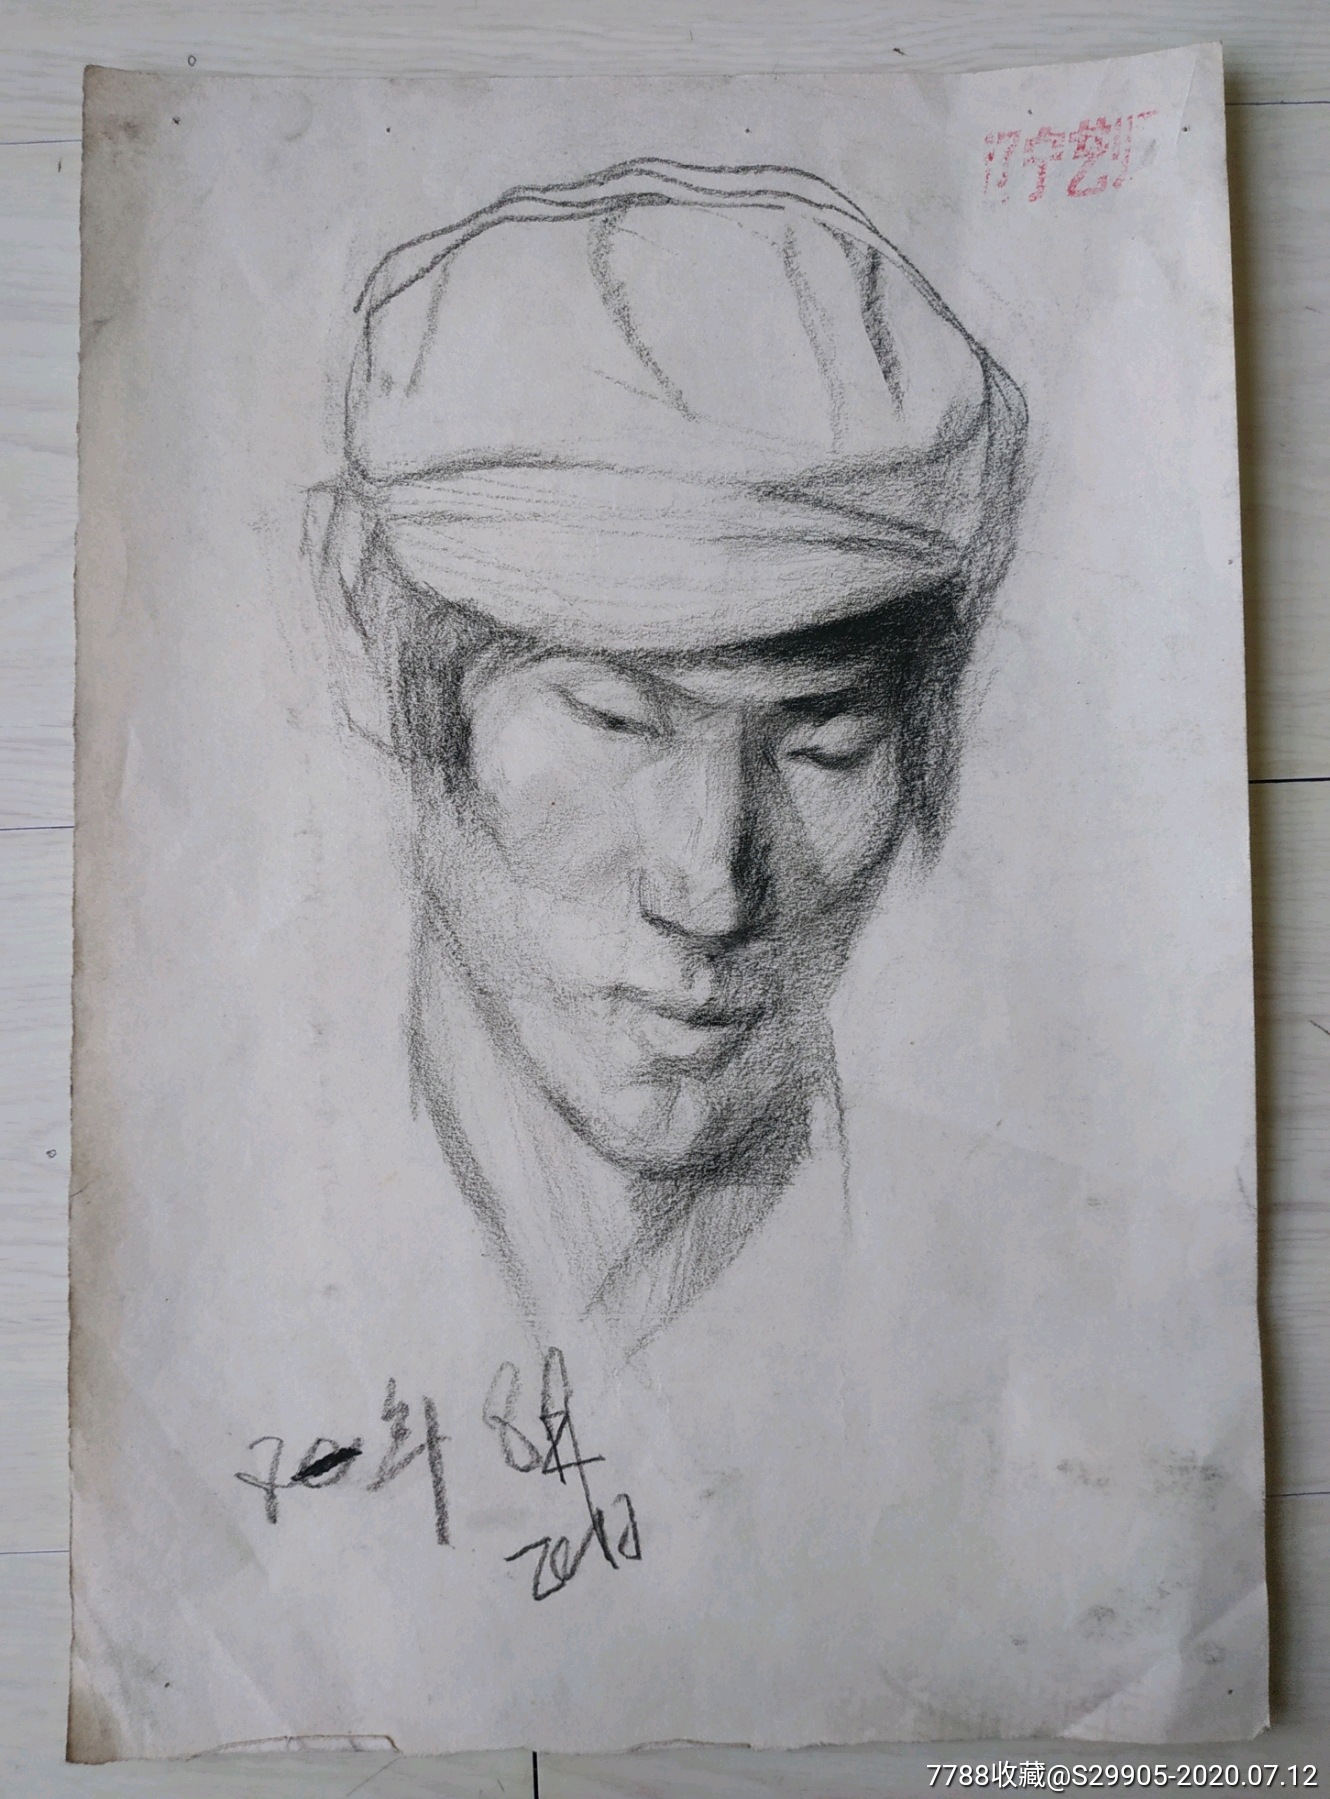 鲁美教授素描作品:戴帽子的男子头像-素描/速写-7788